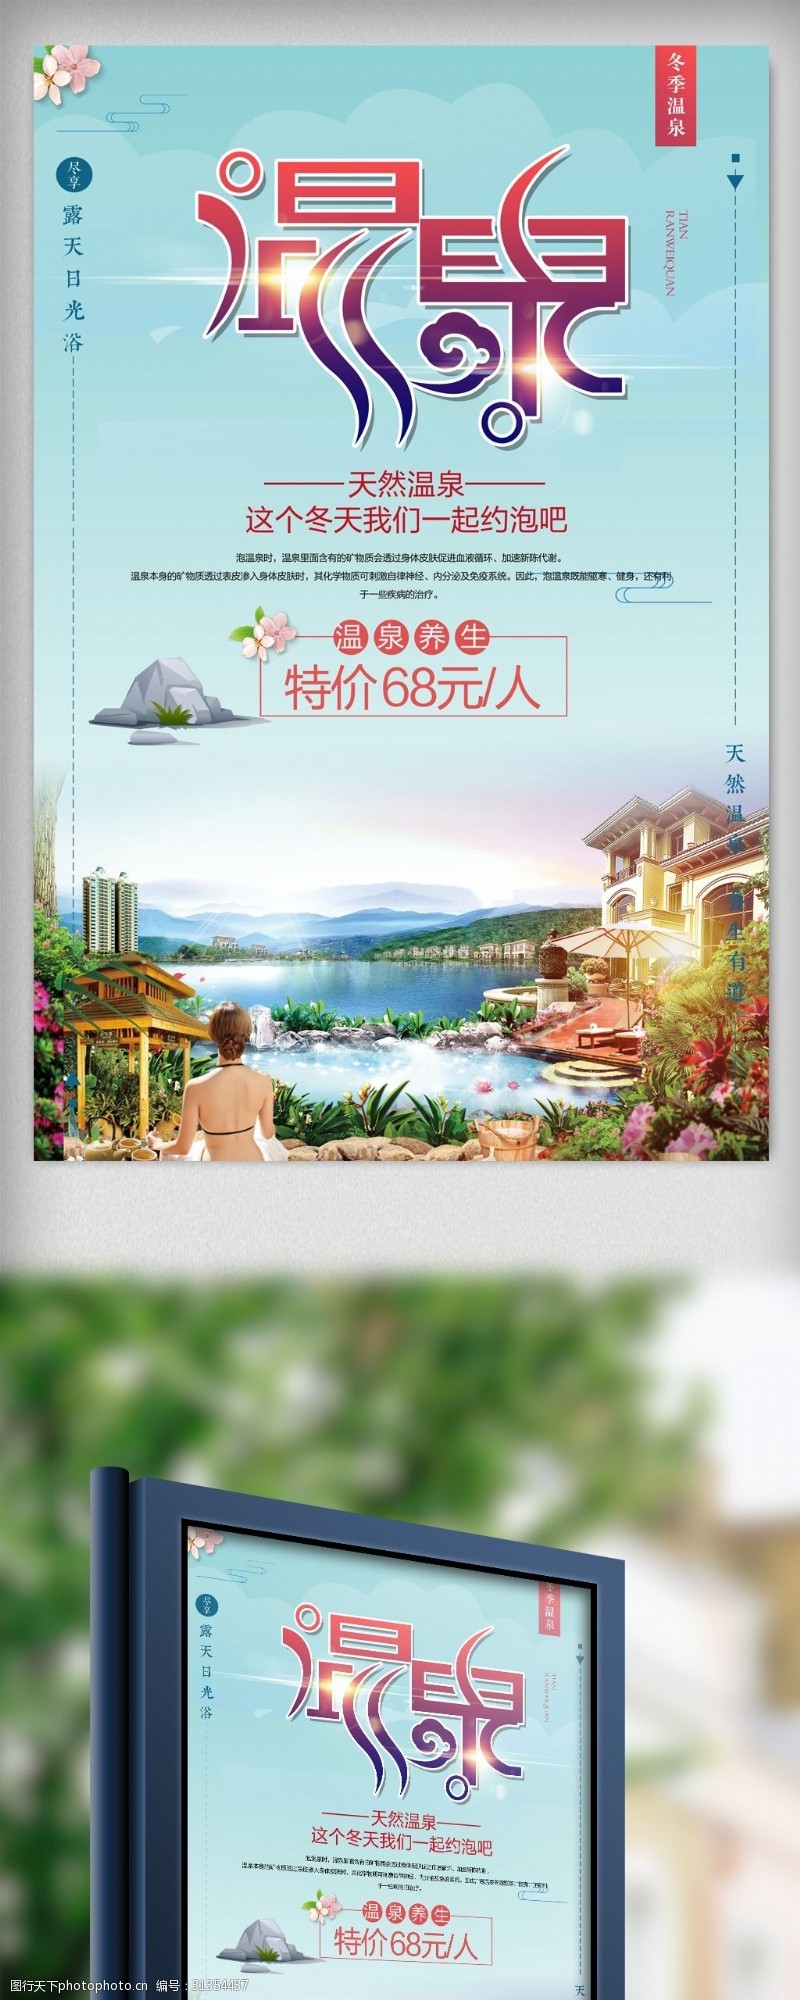 日本旅游广告2017年创意冬季旅游泡温泉渡假宣传海报